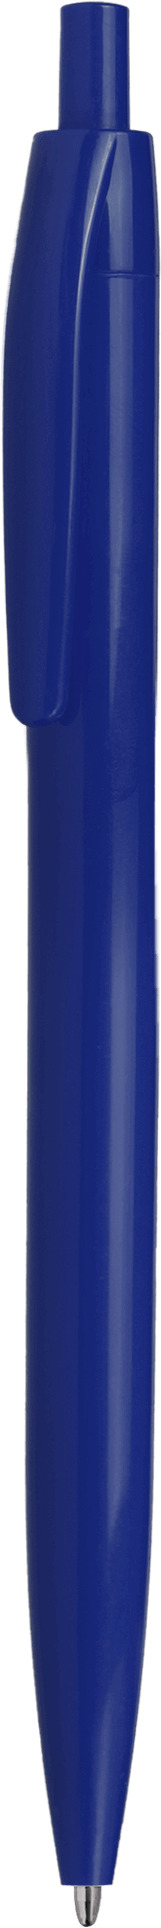 Ручка DAROM, однотонная, темно-синяя